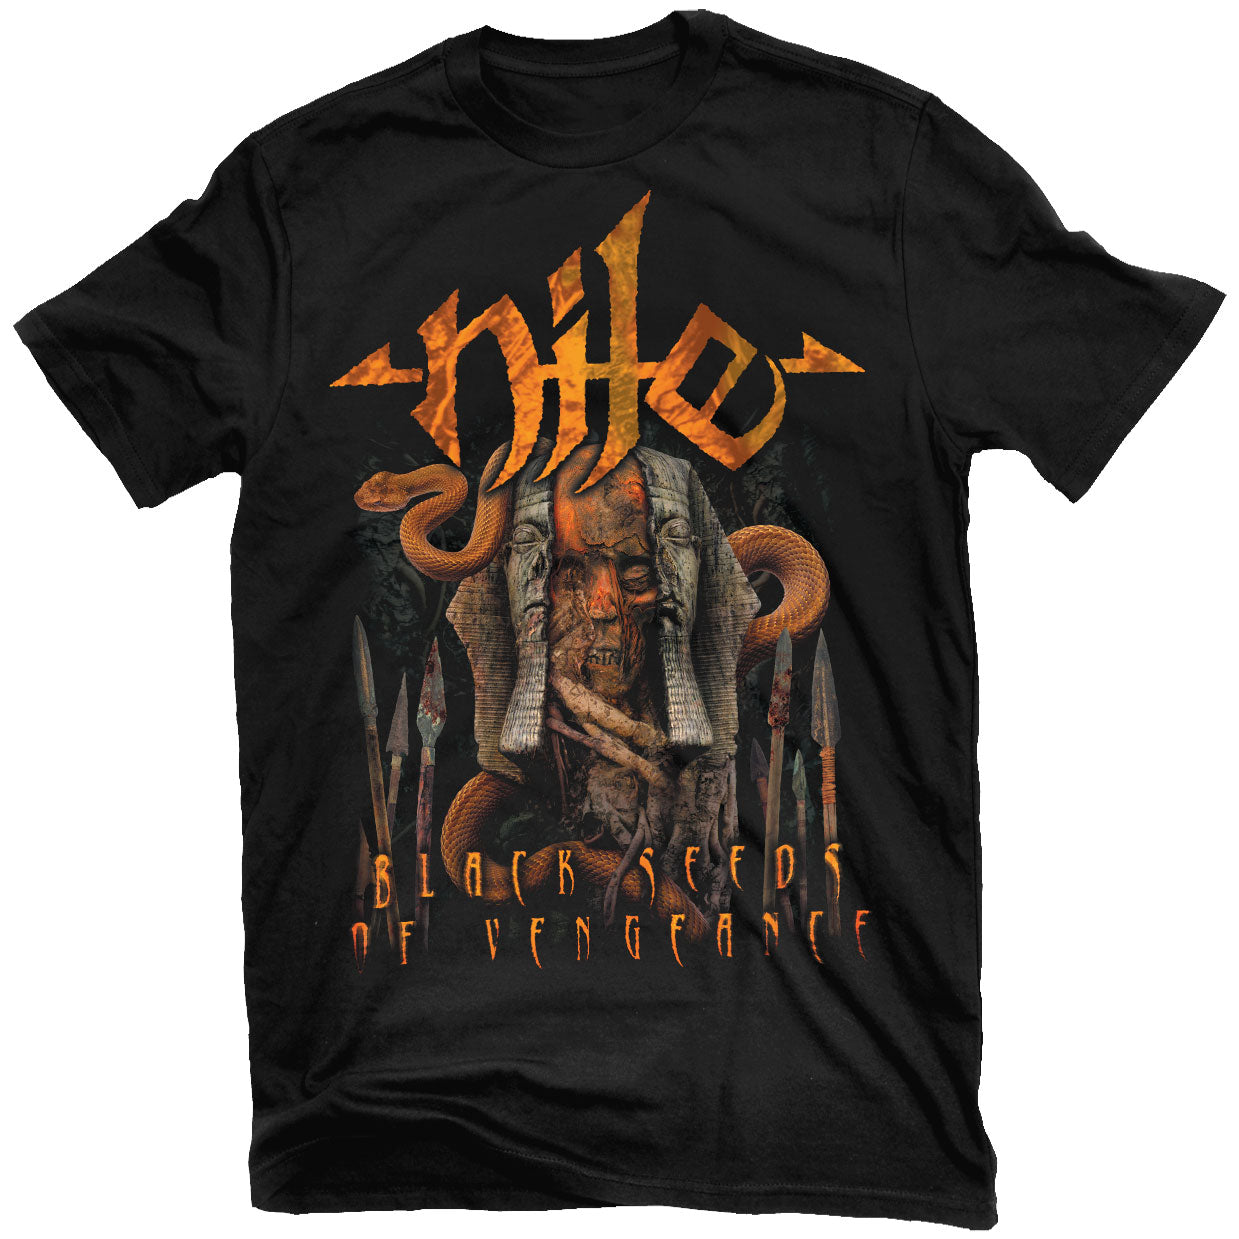 Nile "Black Seeds of Vengeance" T-Shirt